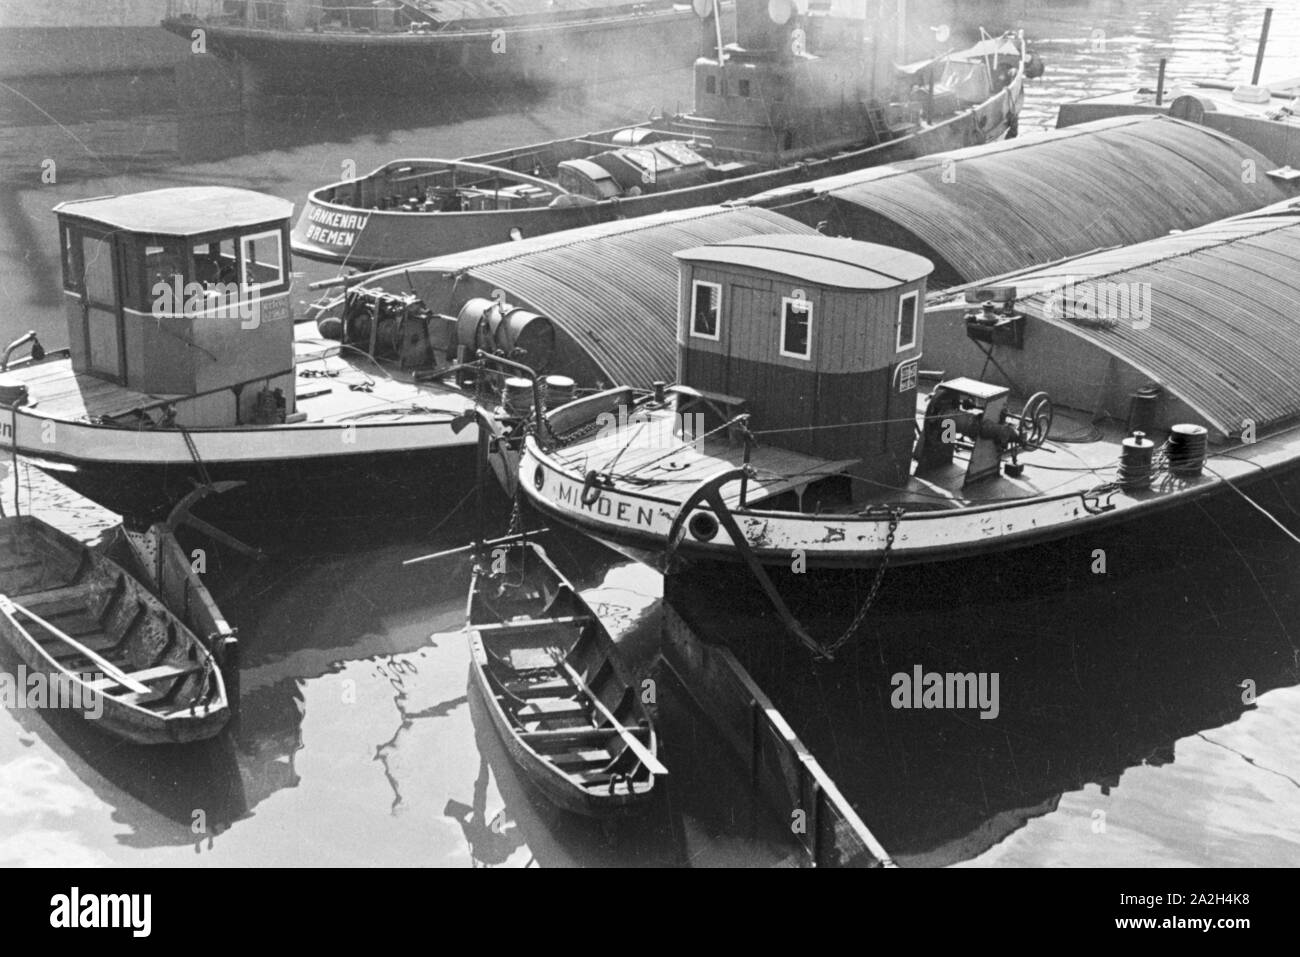 Kähne auf der Weser à Brême, Deutschland 1930 er Jahre. Sur les bateaux de rivière Weser à Brême, Allemagne 1930. Banque D'Images